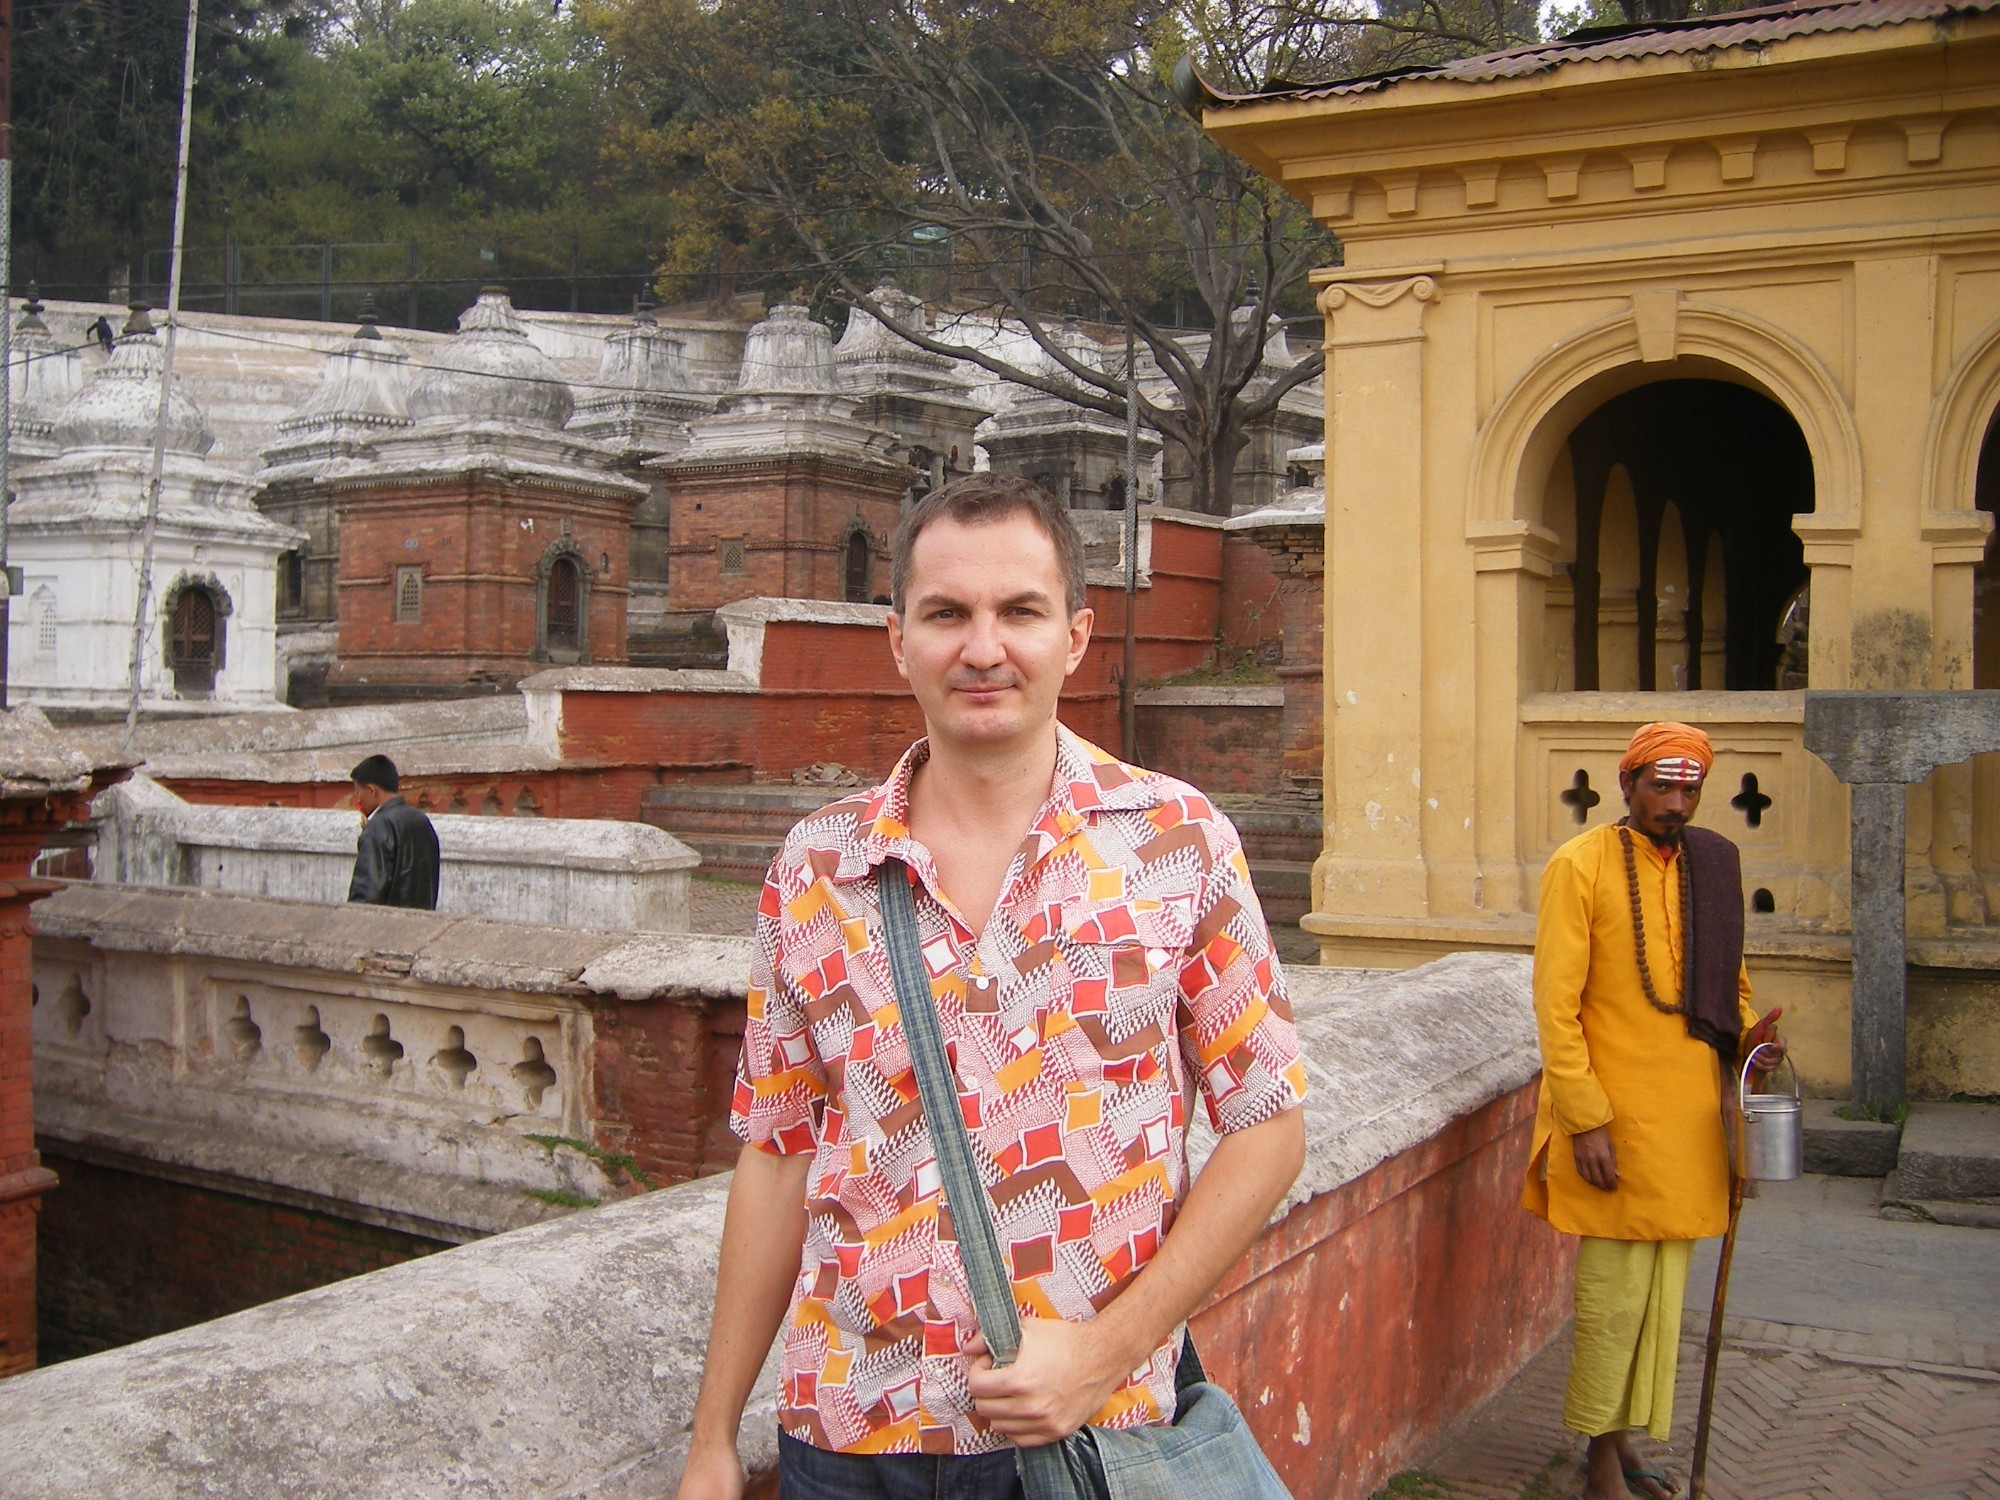 НЕПАЛ, Катманду, 18 марта 2008